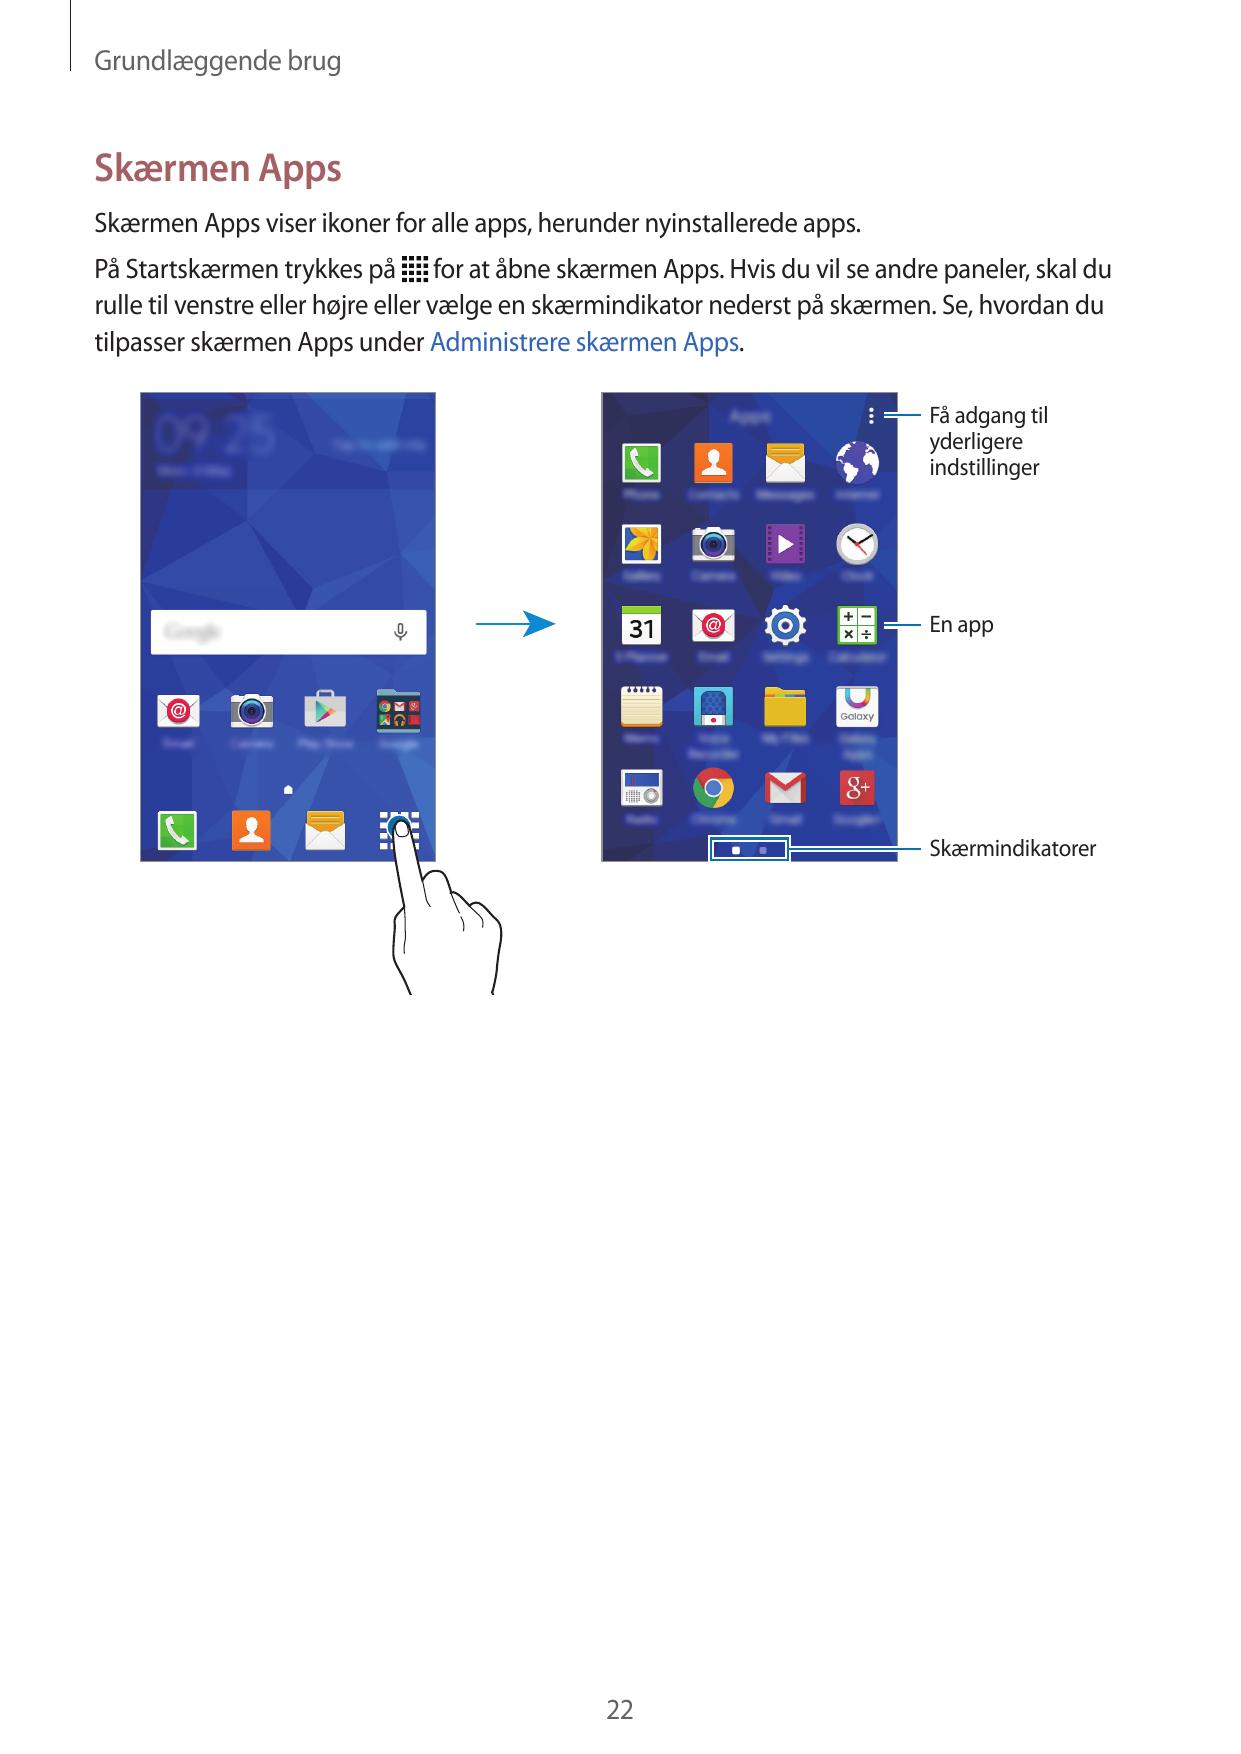 Grundlæggende brugSkærmen AppsSkærmen Apps viser ikoner for alle apps, herunder nyinstallerede apps.På Startskærmen trykkes på f